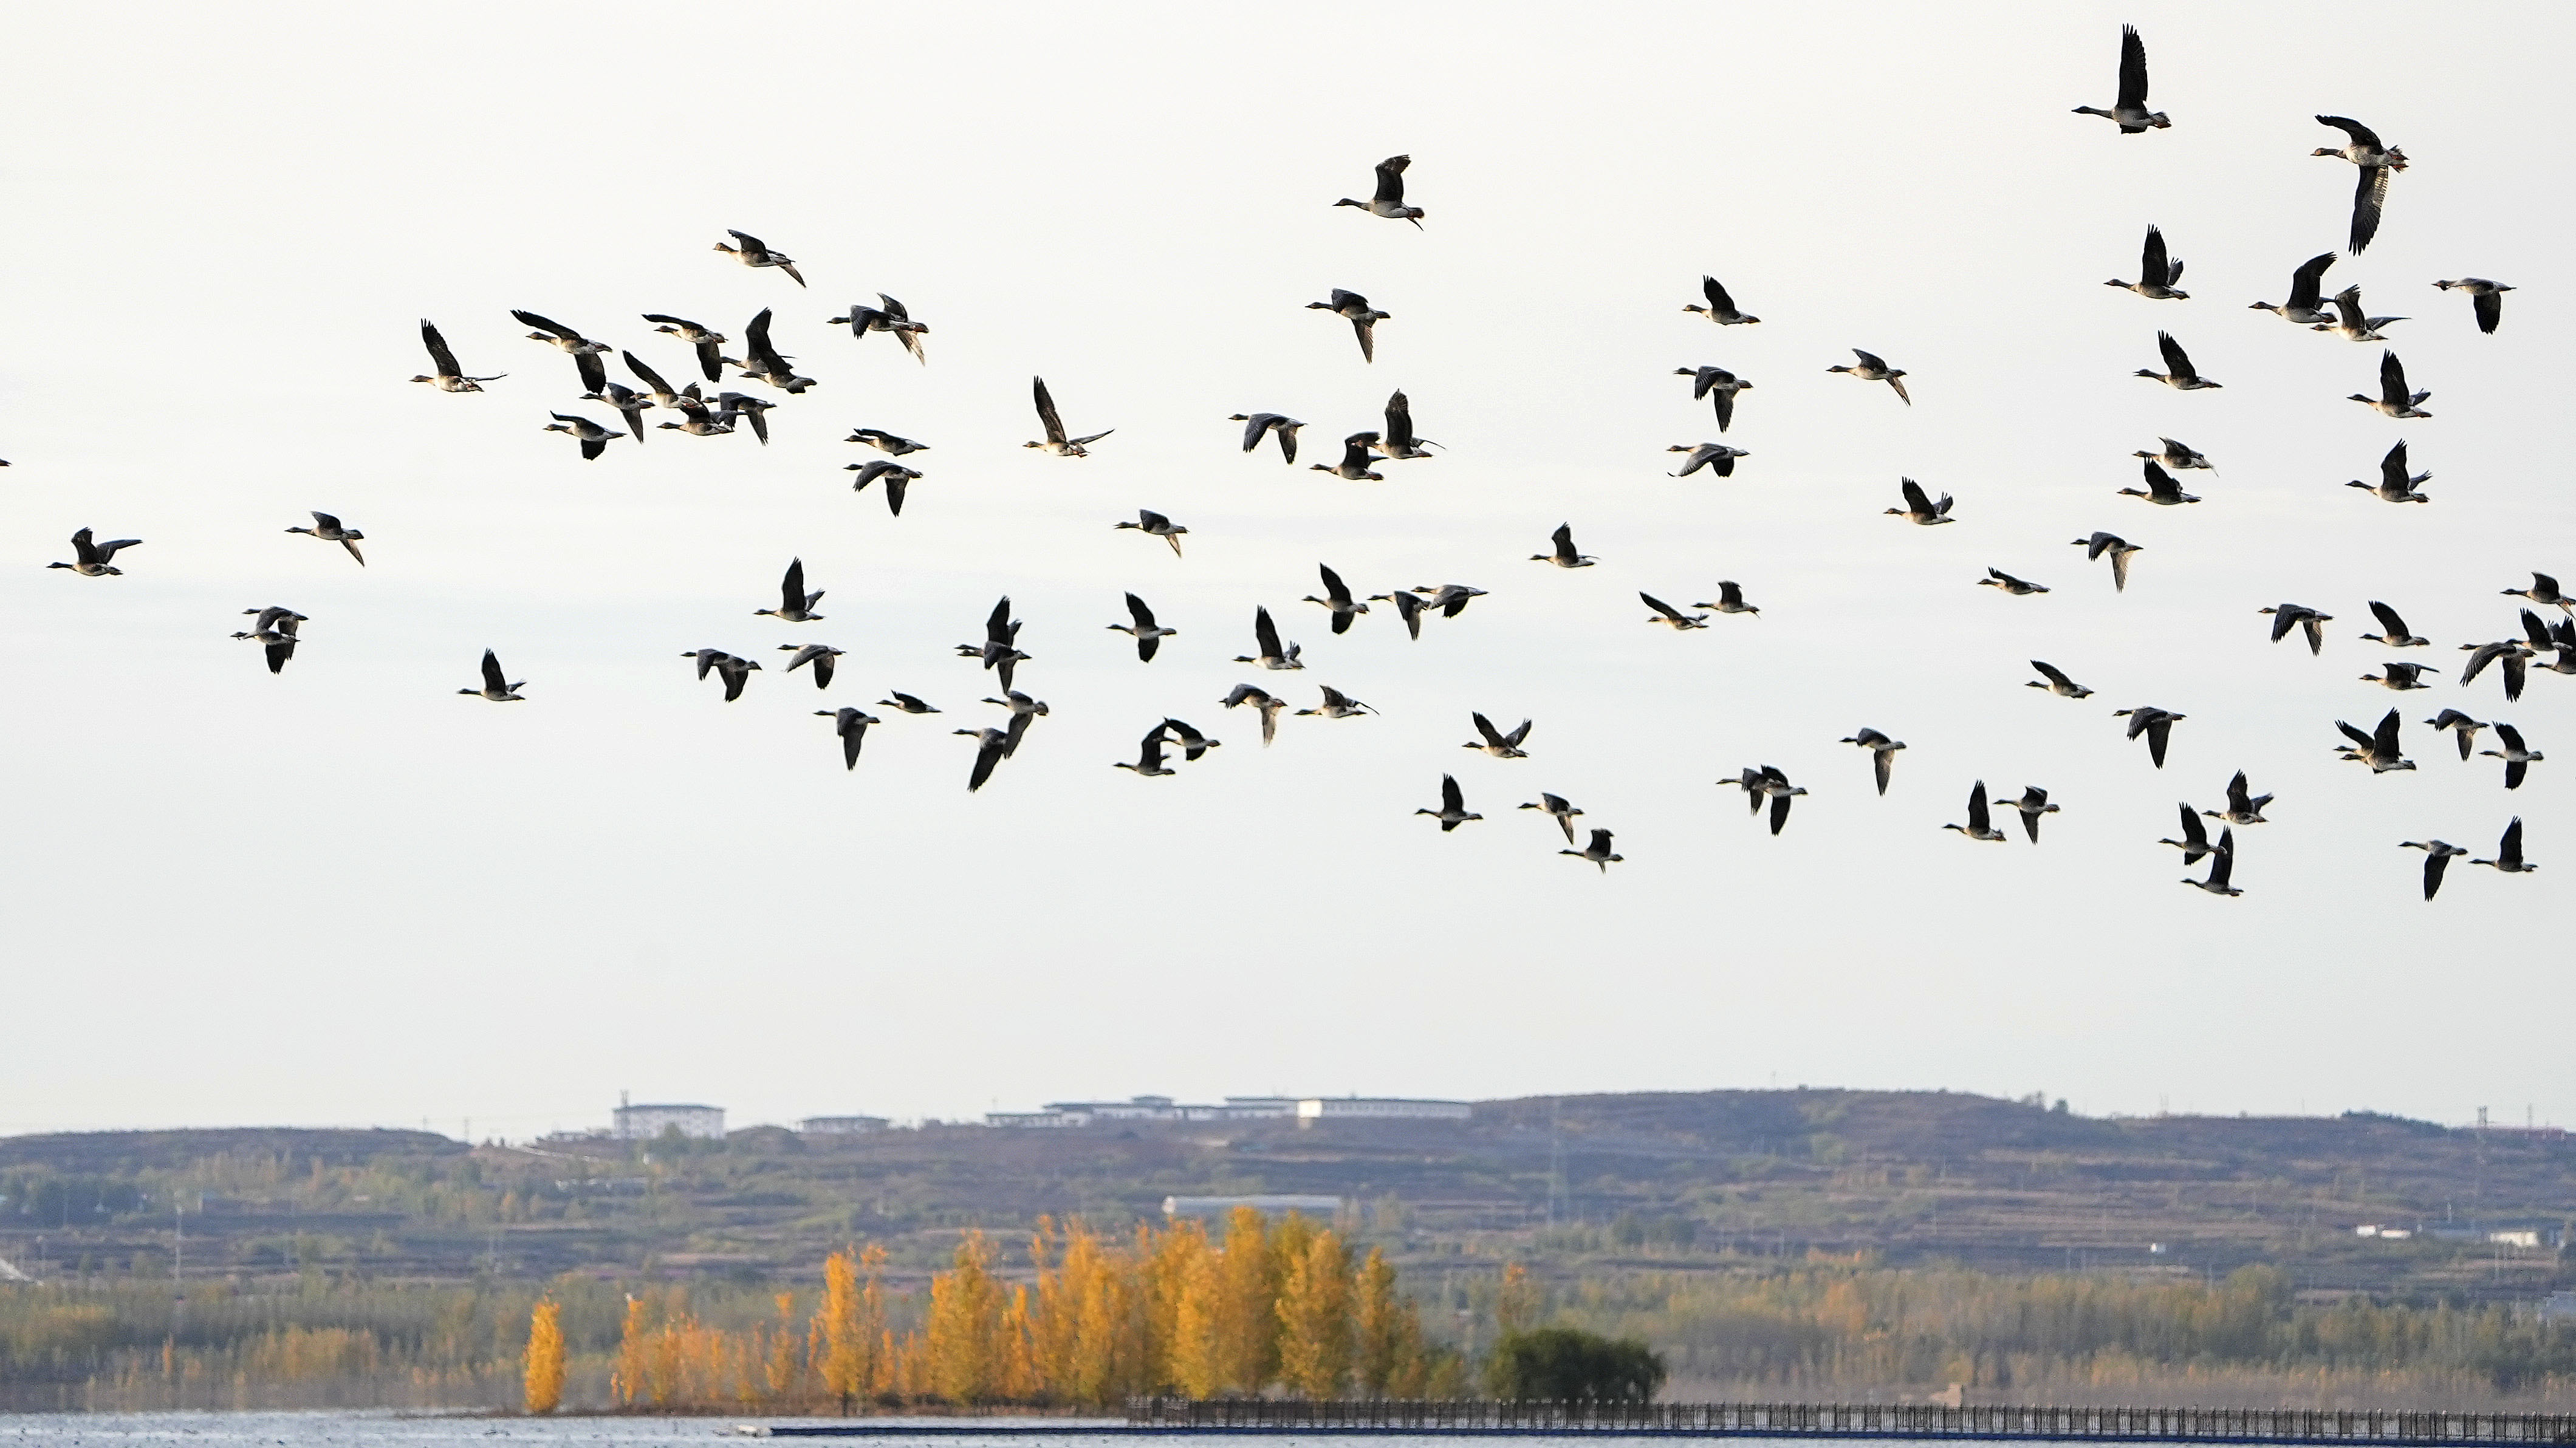 【中首】湿地雁影万羽飞 溢泉湖进入最美候鸟季